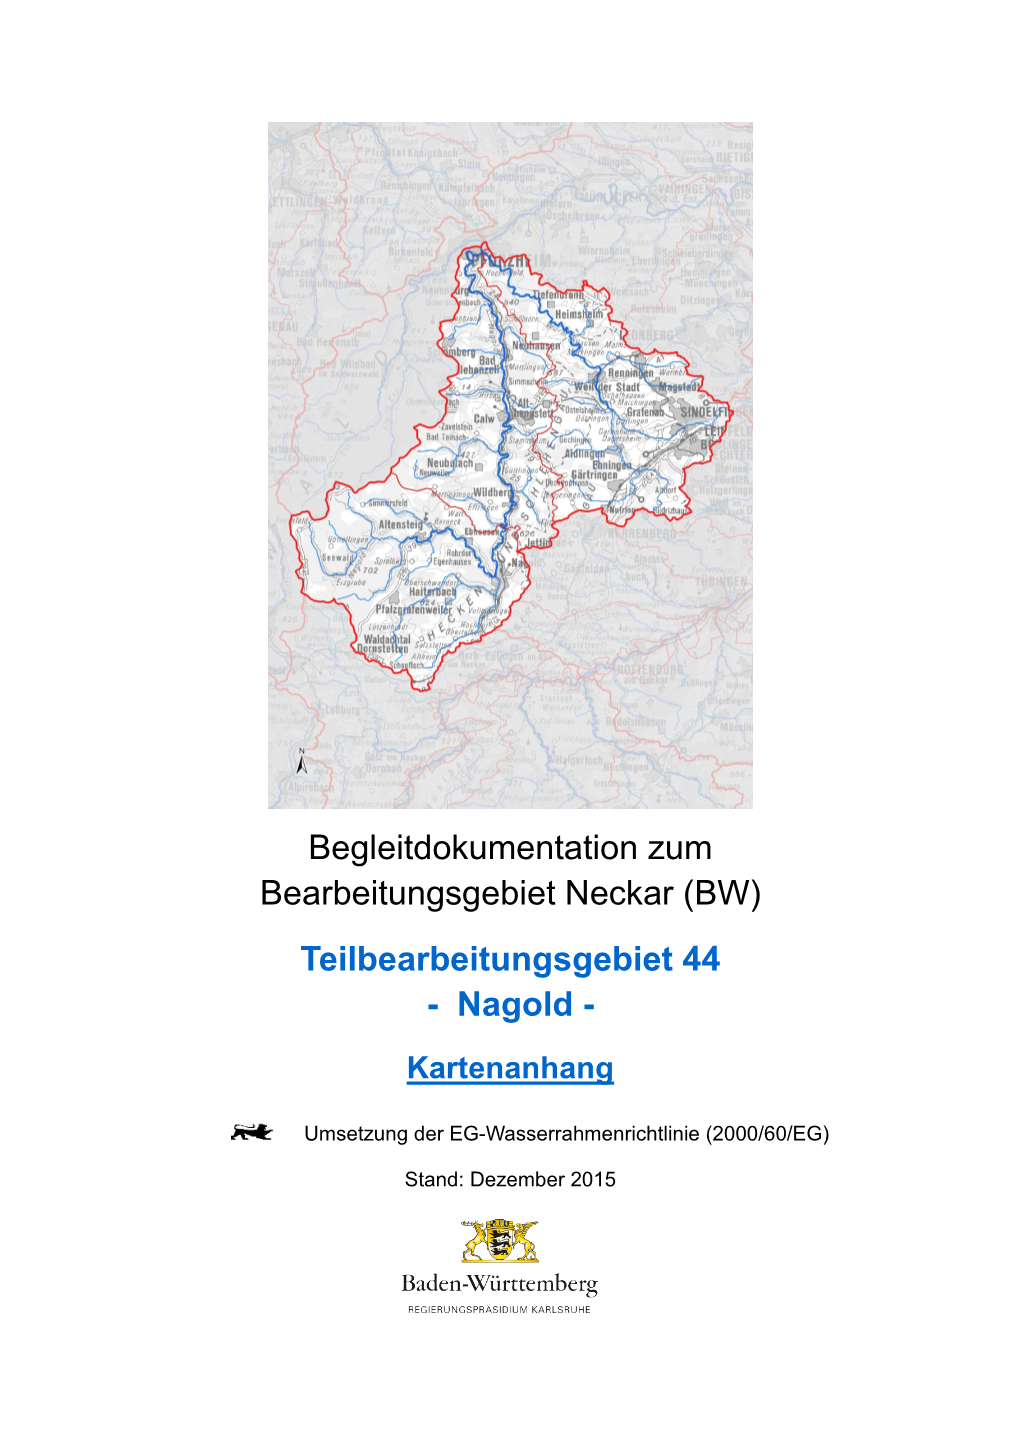 Begleitdokumentation Zum Bearbeitungsgebiet Neckar (BW) Teilbearbeitungsgebiet 44 - Nagold - Kartenanhang